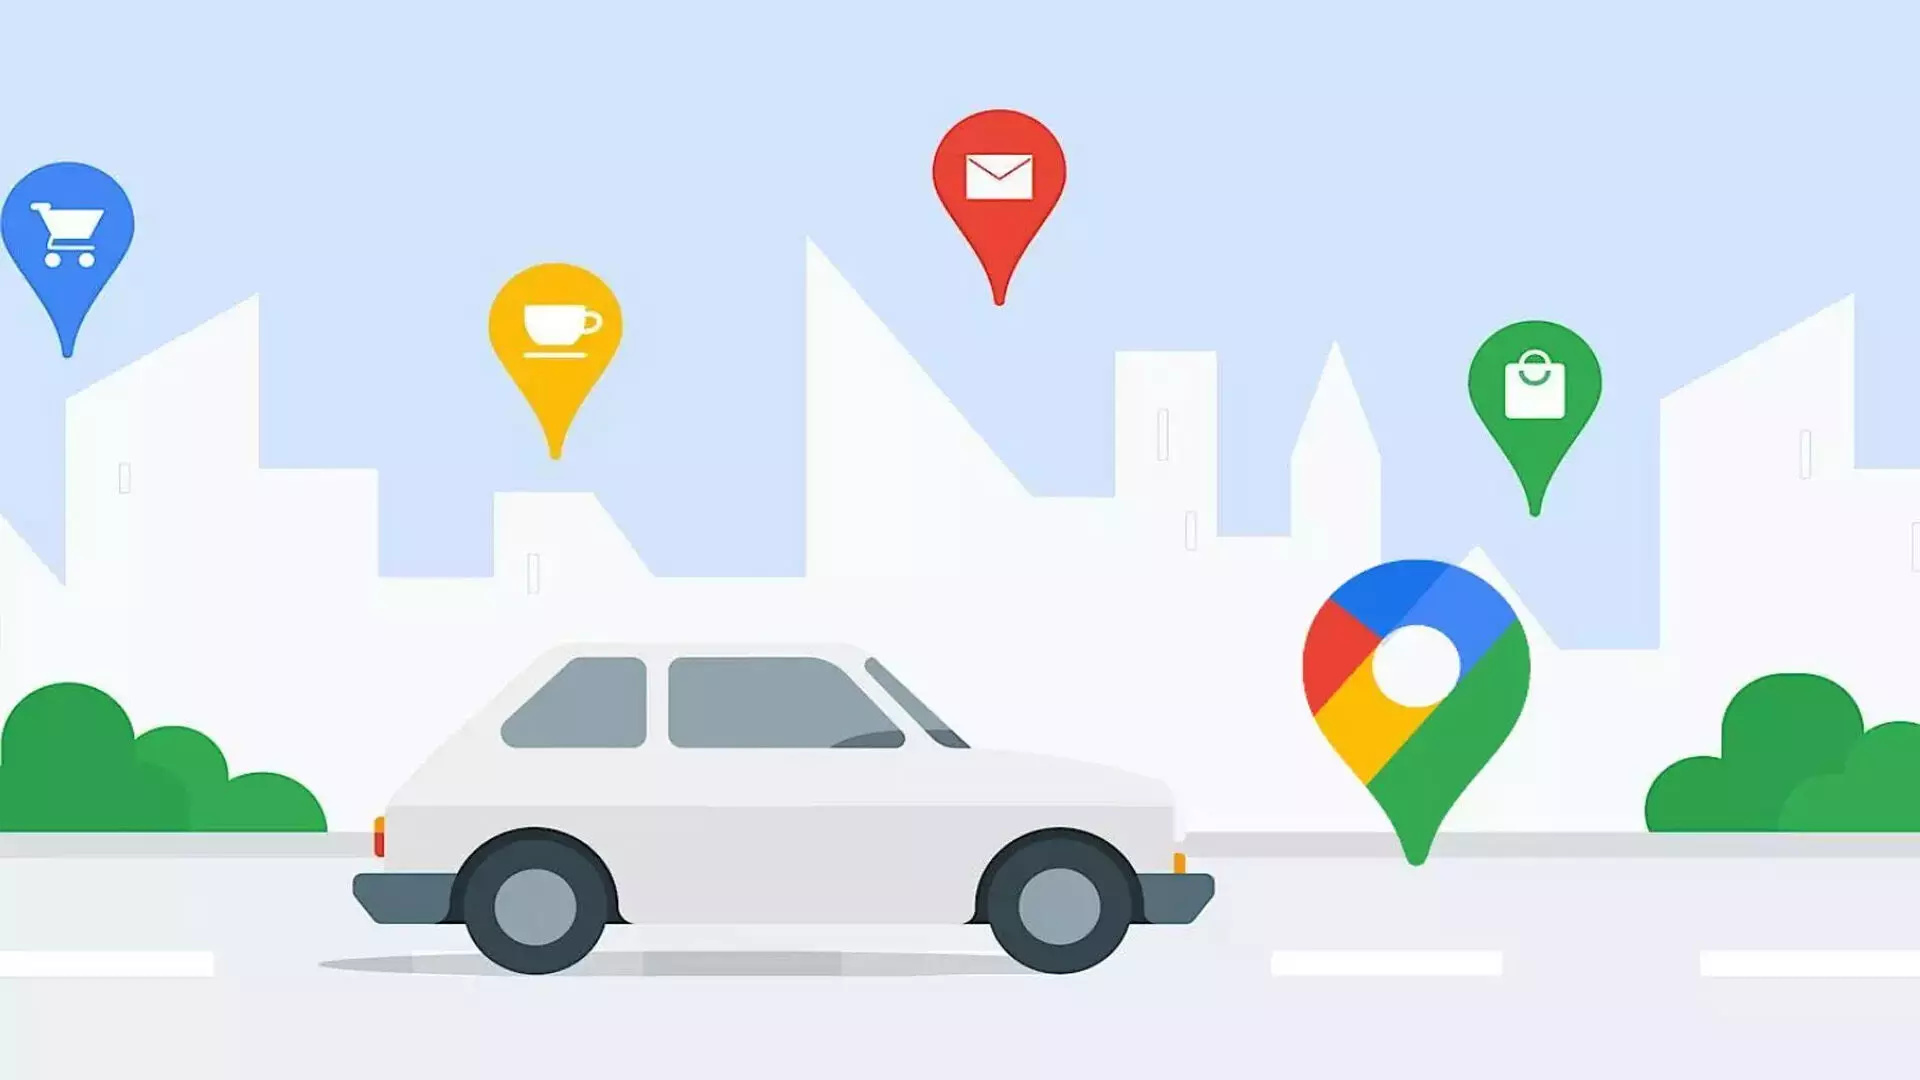 Google मैप्स ने अपने नए अपडेट के साथ यात्रा योजना को नवीनीकृत किया